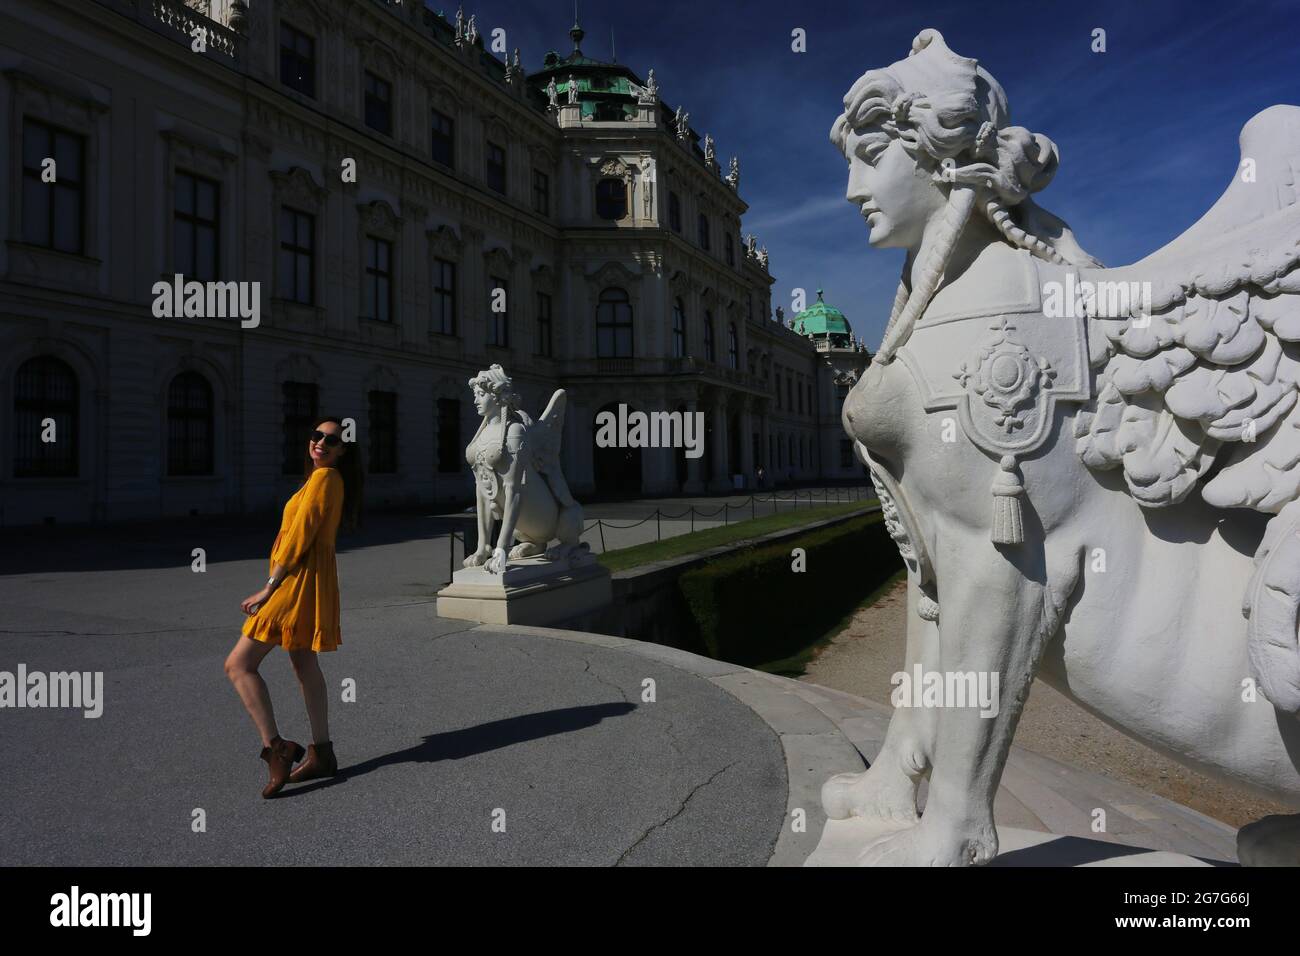 Wien, Architektur, das Barockes Schloss Belvedere ist das meistbesuchtes Kunstmuseum Österreichs Foto Stock